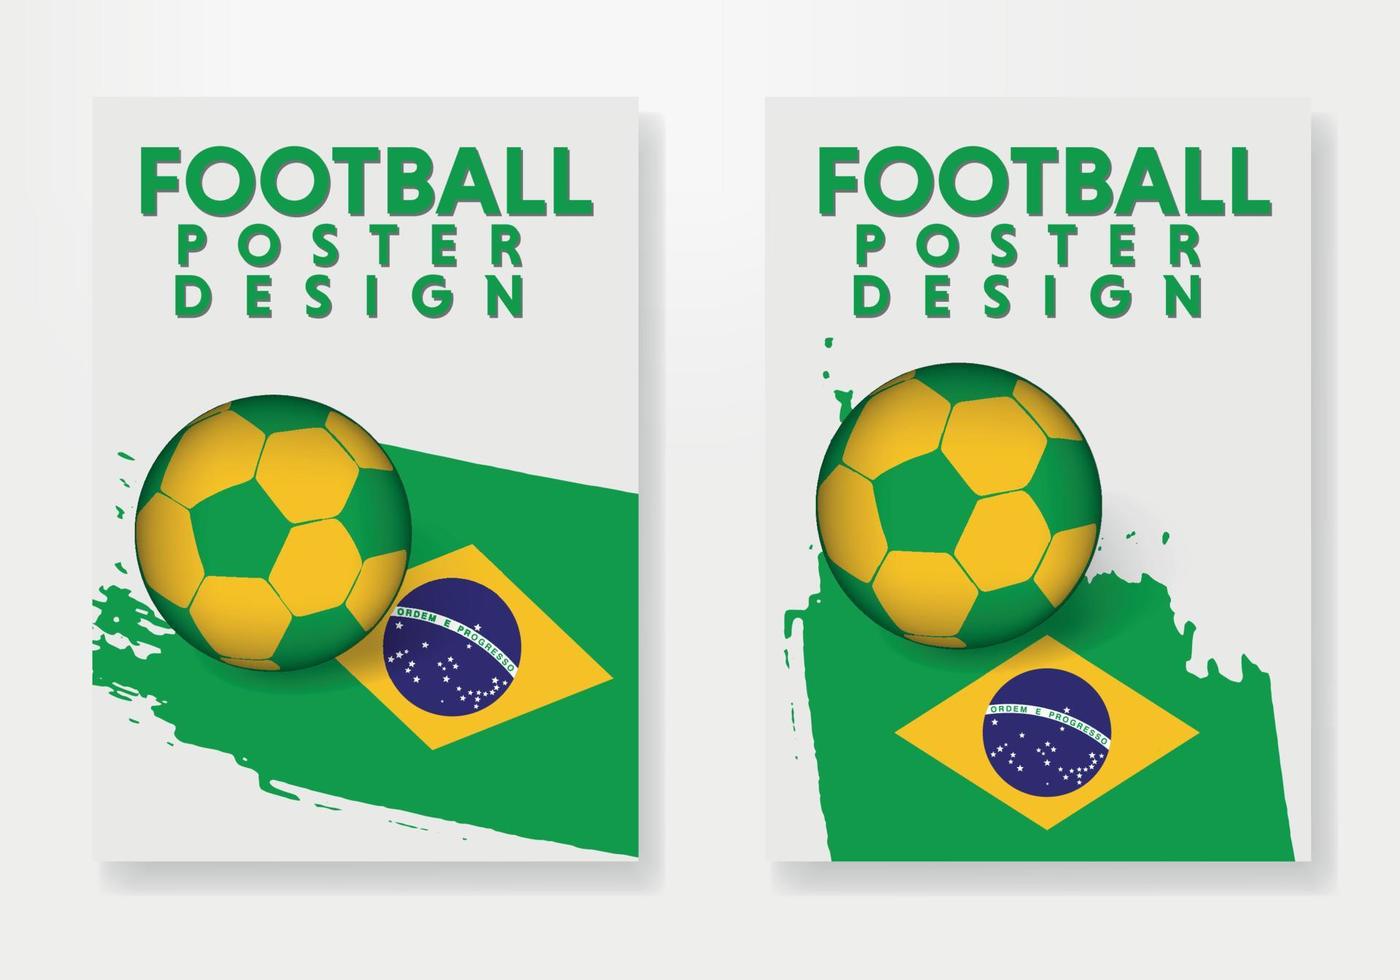 cartaz editável para o time de futebol brasileiro, jogador de futebol, uniforme, bandeira. vetor